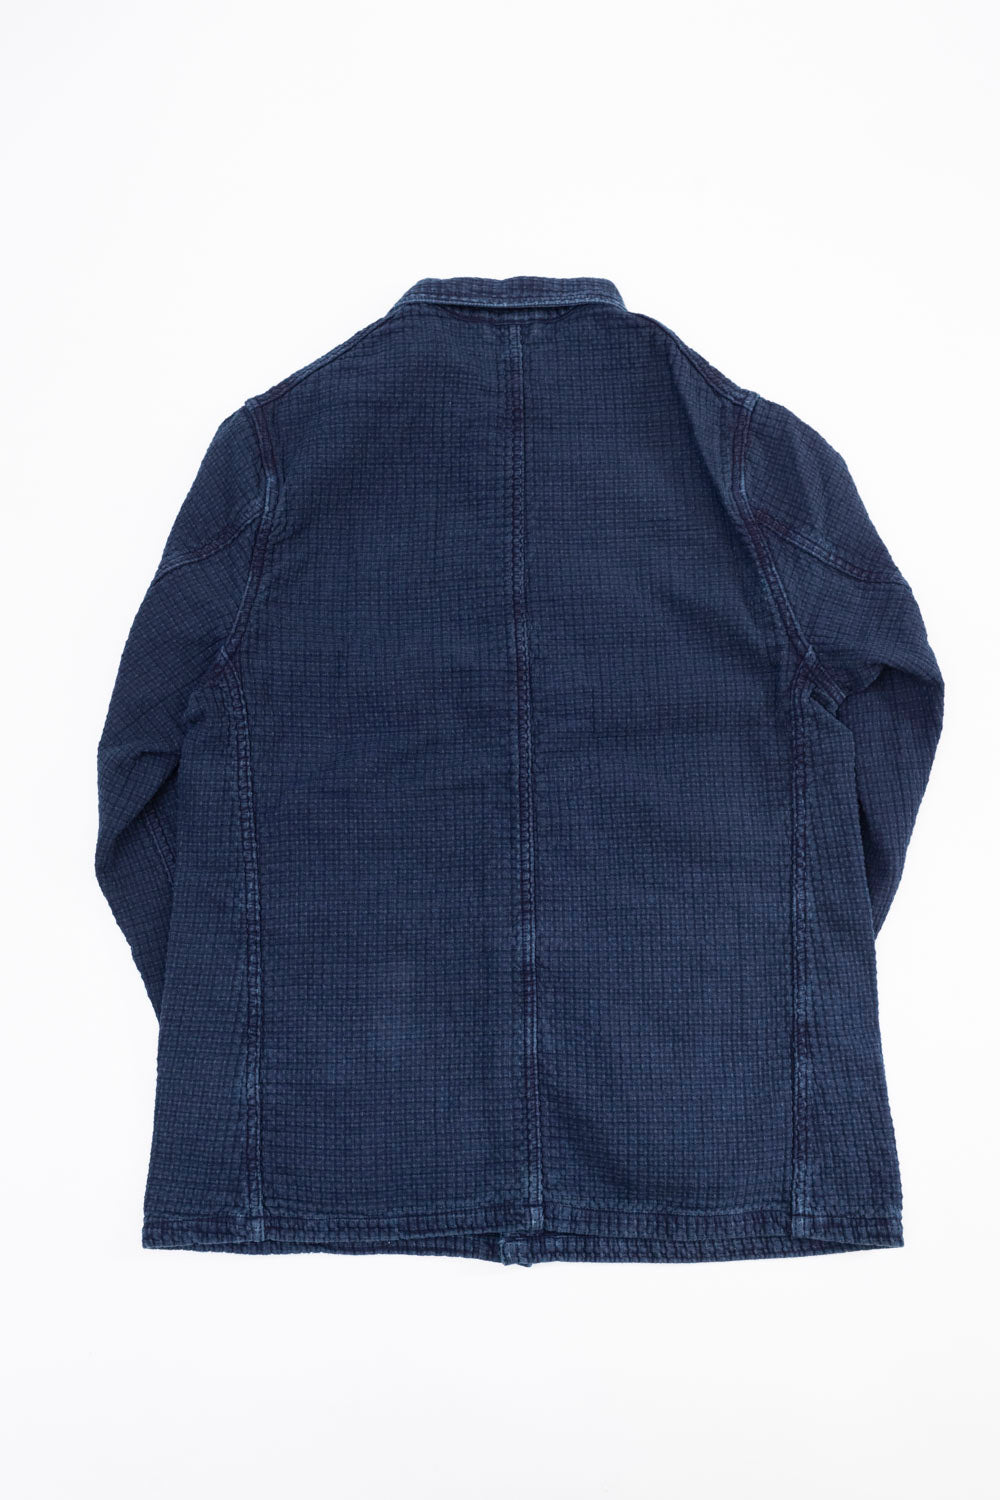 4569 - Stitched Sashiko Coverall - Indigo